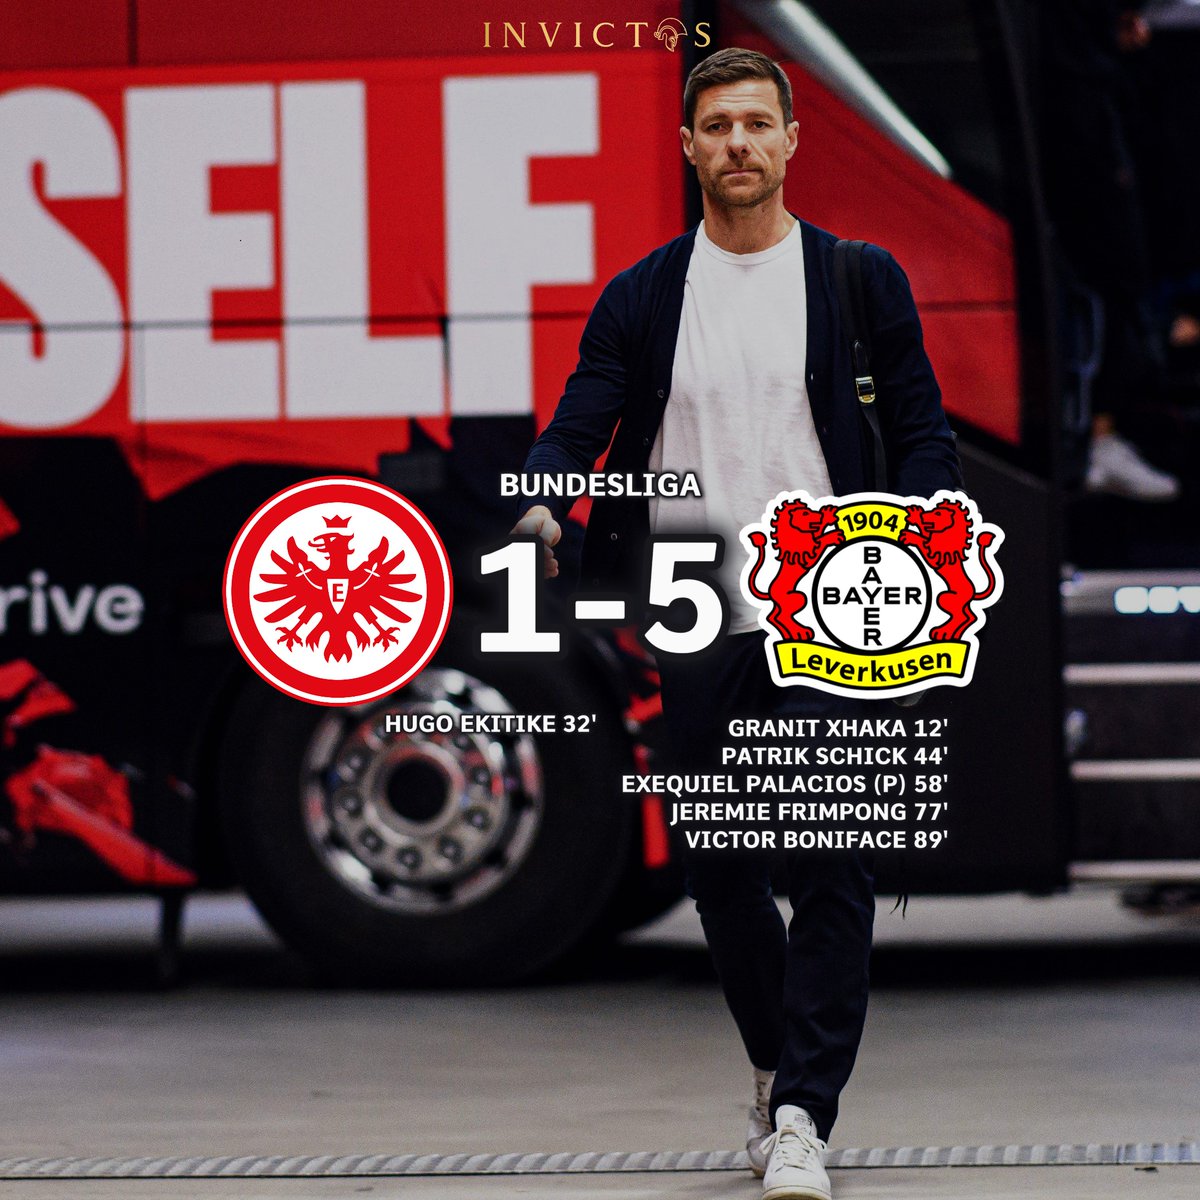 ¡¡ÚLTIMA HORA!! Bayer Leverkusen le abrió una MANITA al Eintracht Frankfurt en la Bundesliga. El campeón de Alemania simplemente no puede dejar de ganar. Ya llevan ¡¡48 PARTIDOS INVICTOS!! en la presente temporada. La mejor racha en toda la historia del fútbol TOP de Europa sigue…